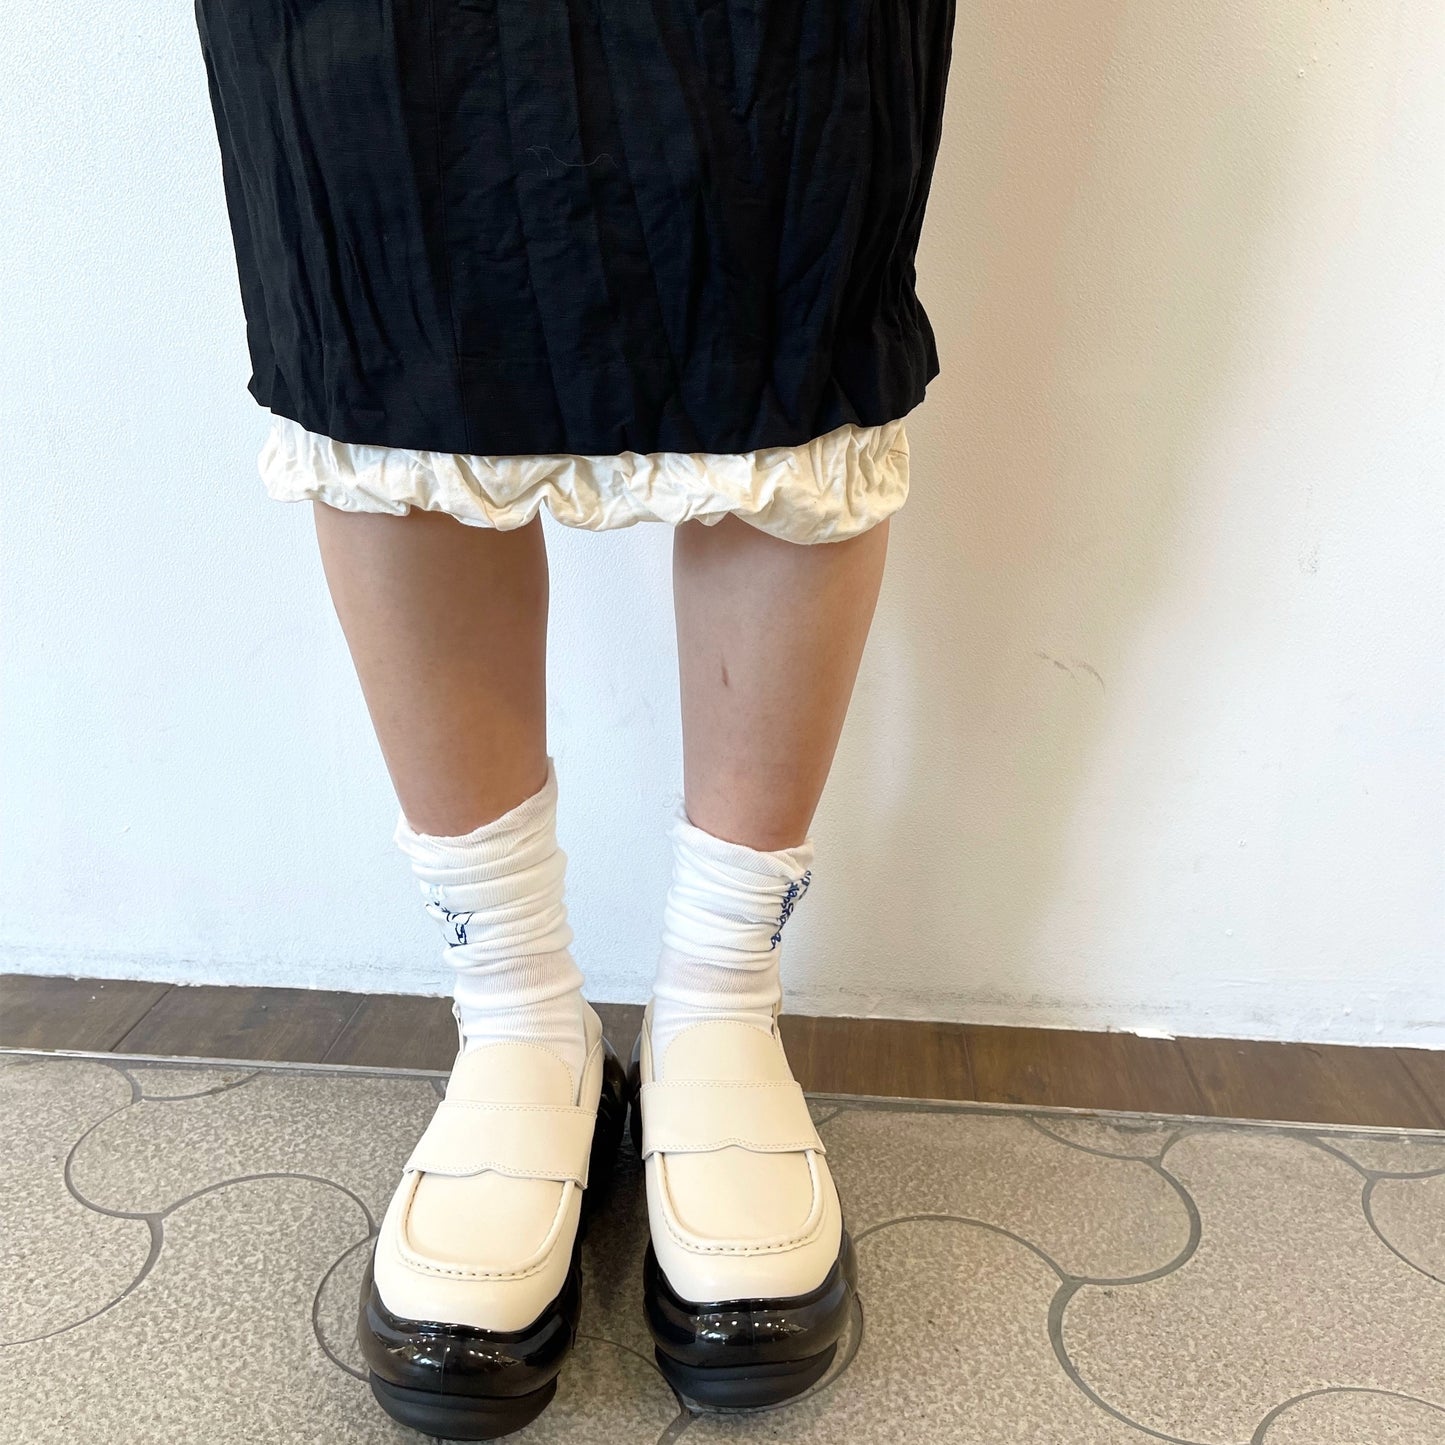 fulled skirt / black / ウォッシュ加工スカート